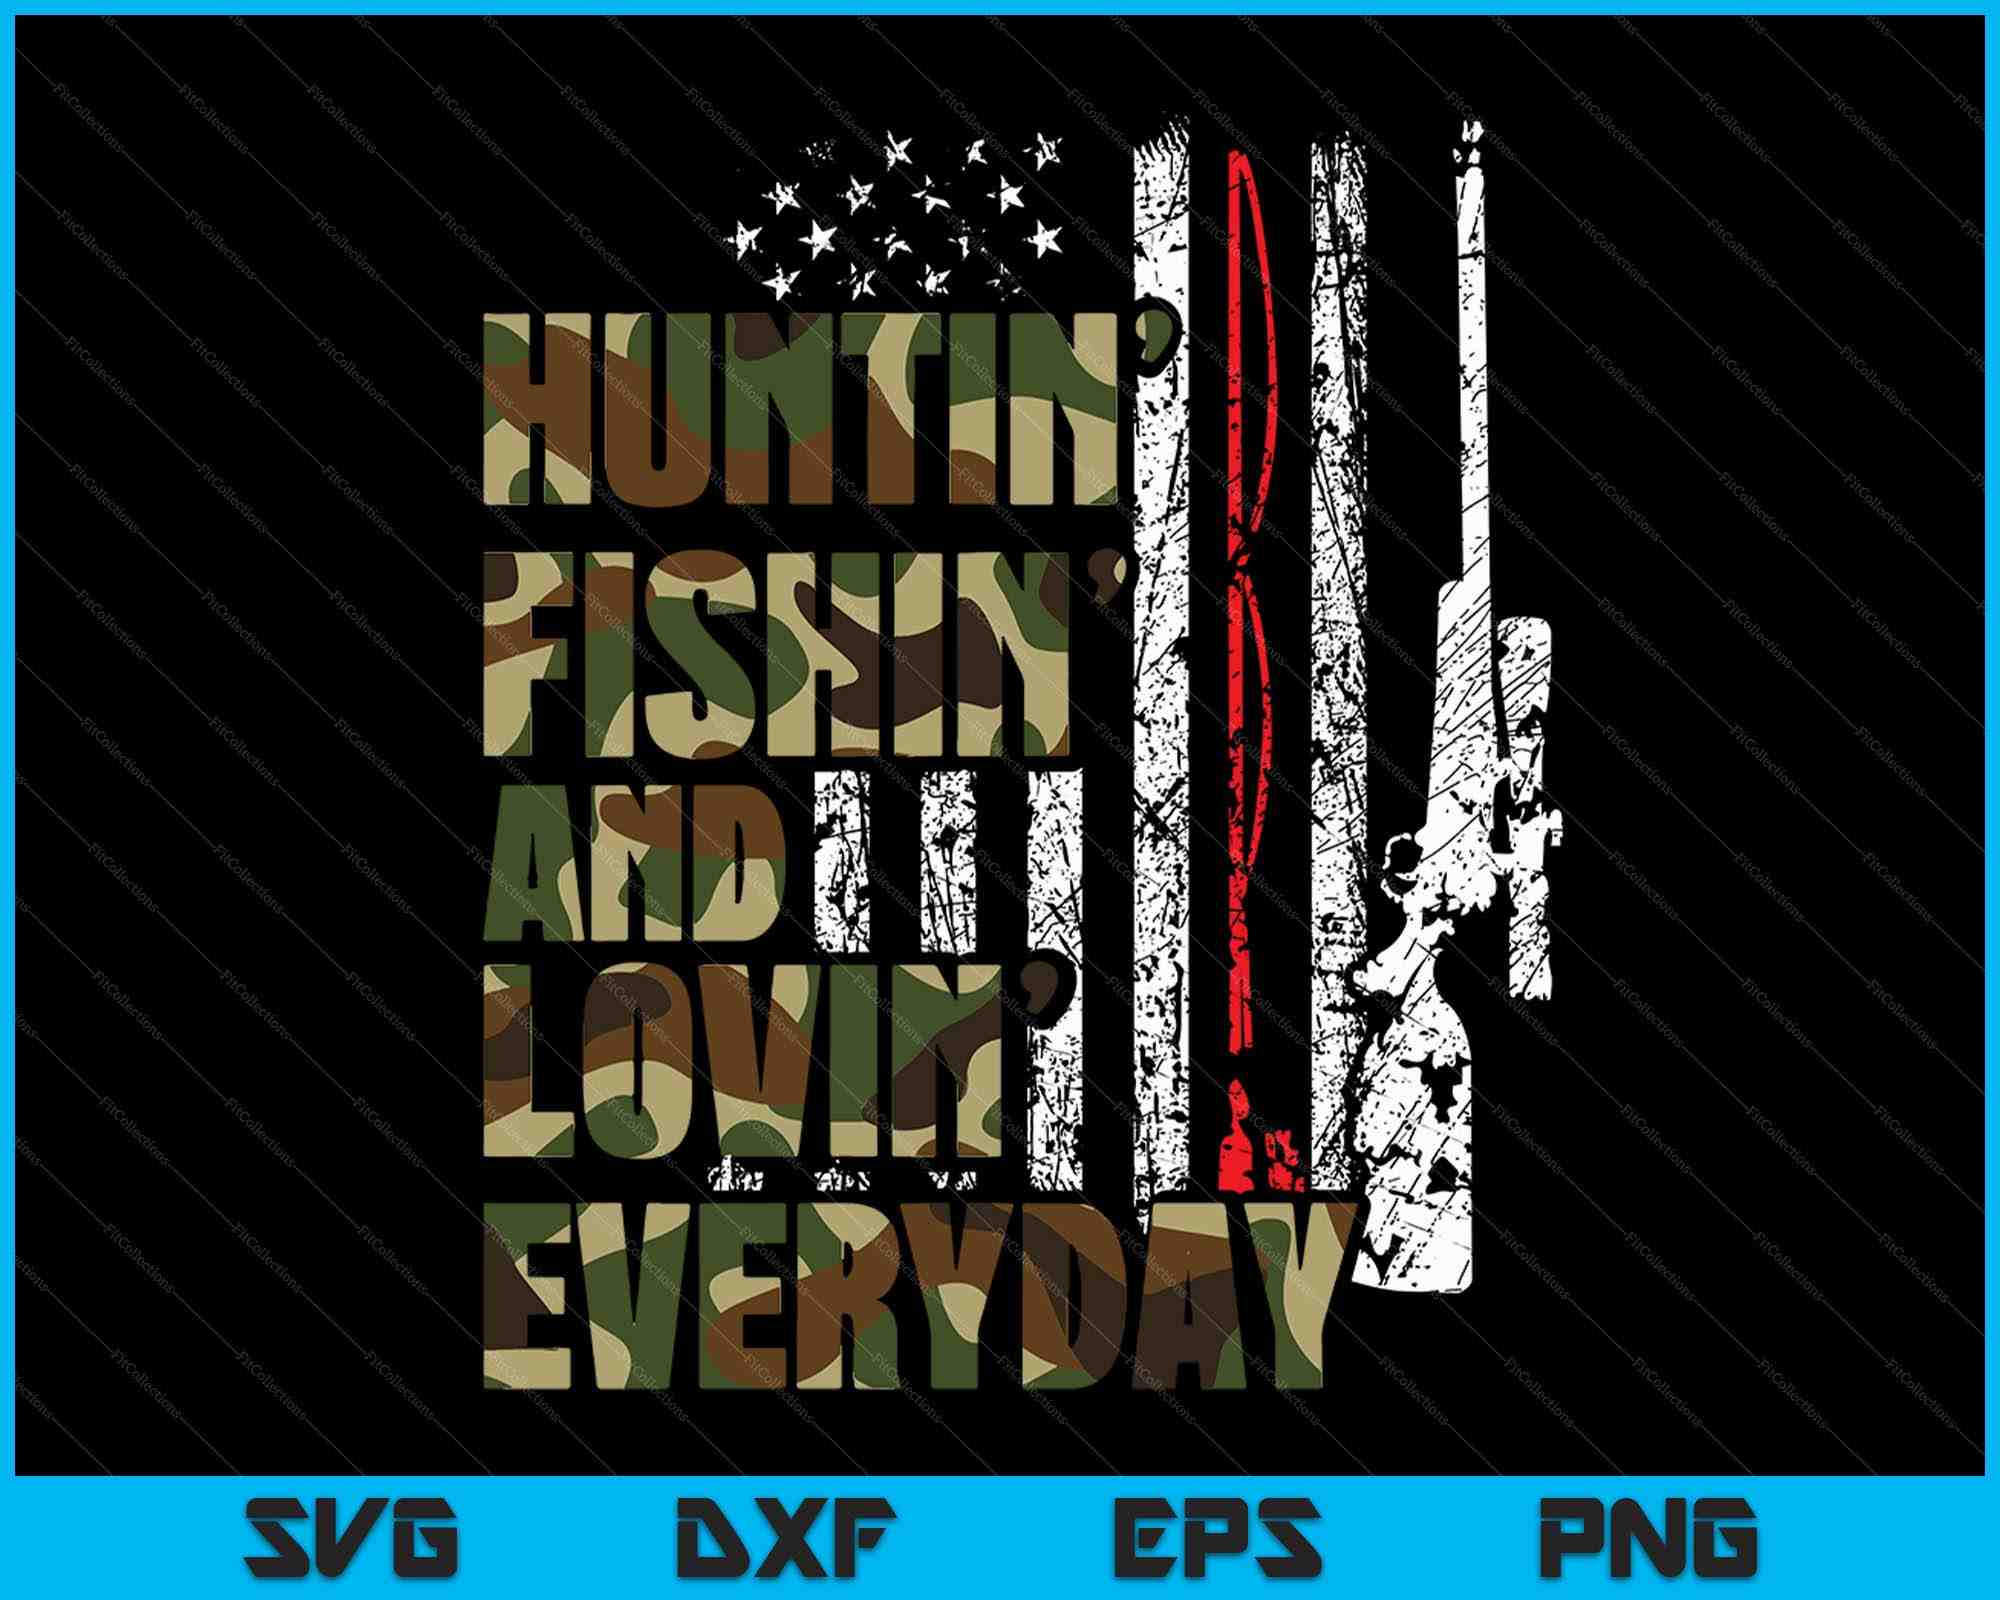 Hunting Fishing Loving Everyday American Deer Hunter Patriot - Hunting  Fishing Loving Everyday - Mug